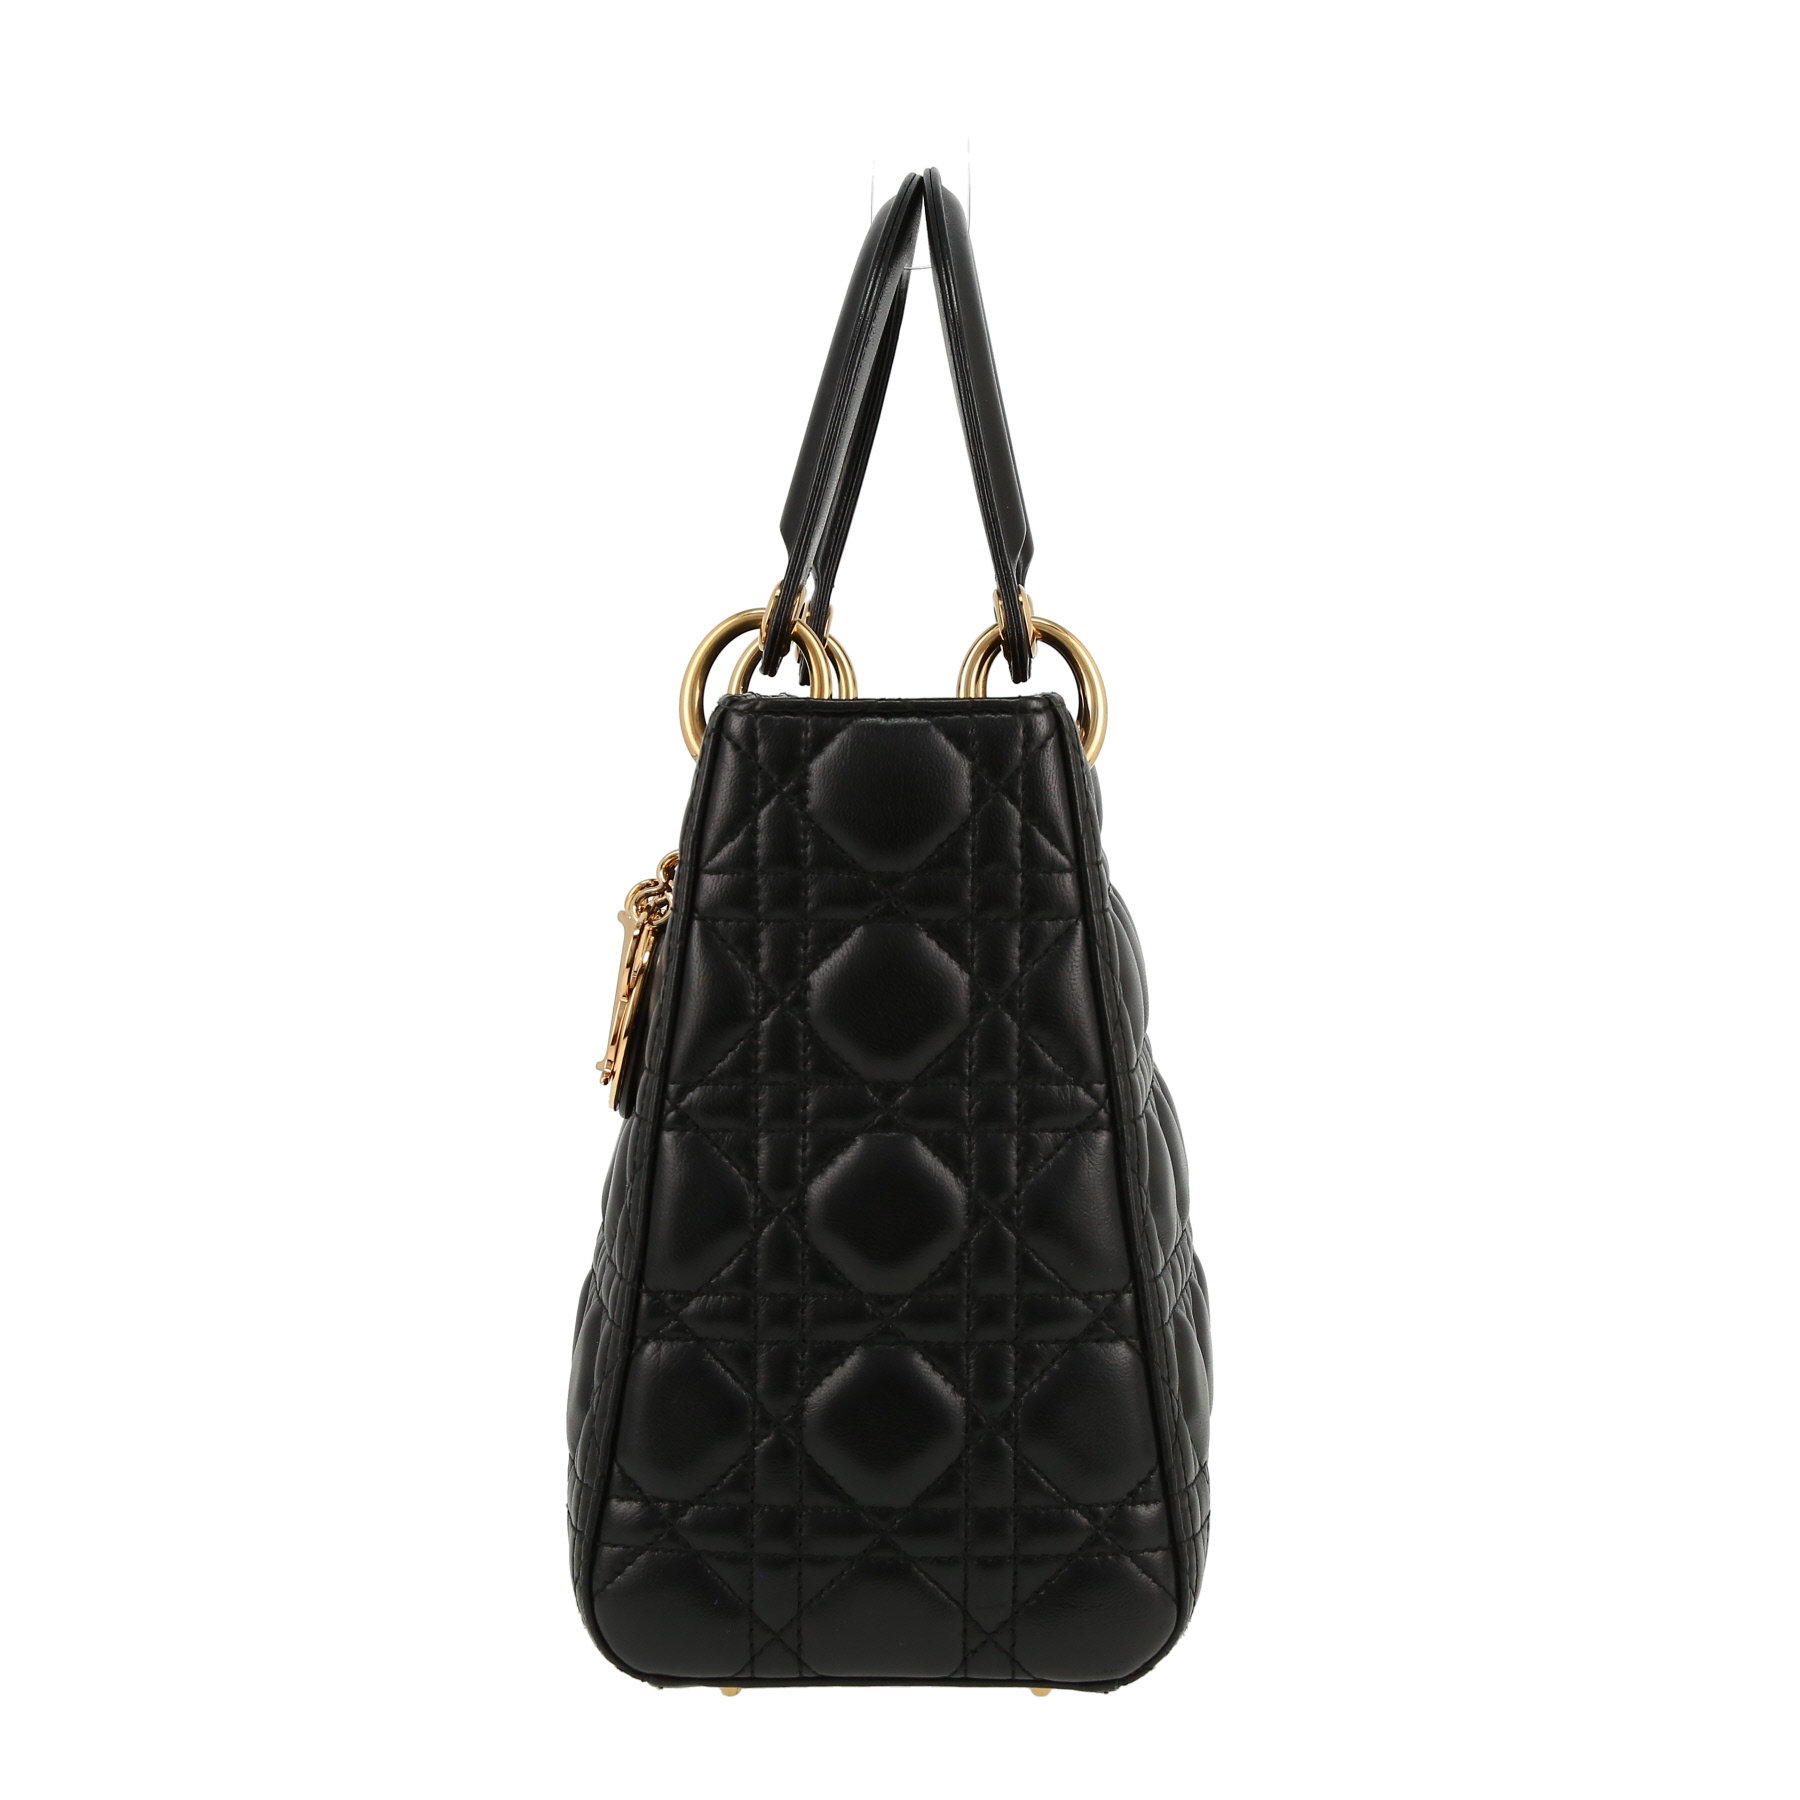 Lady Dior Handbag In Black Leather Cannage